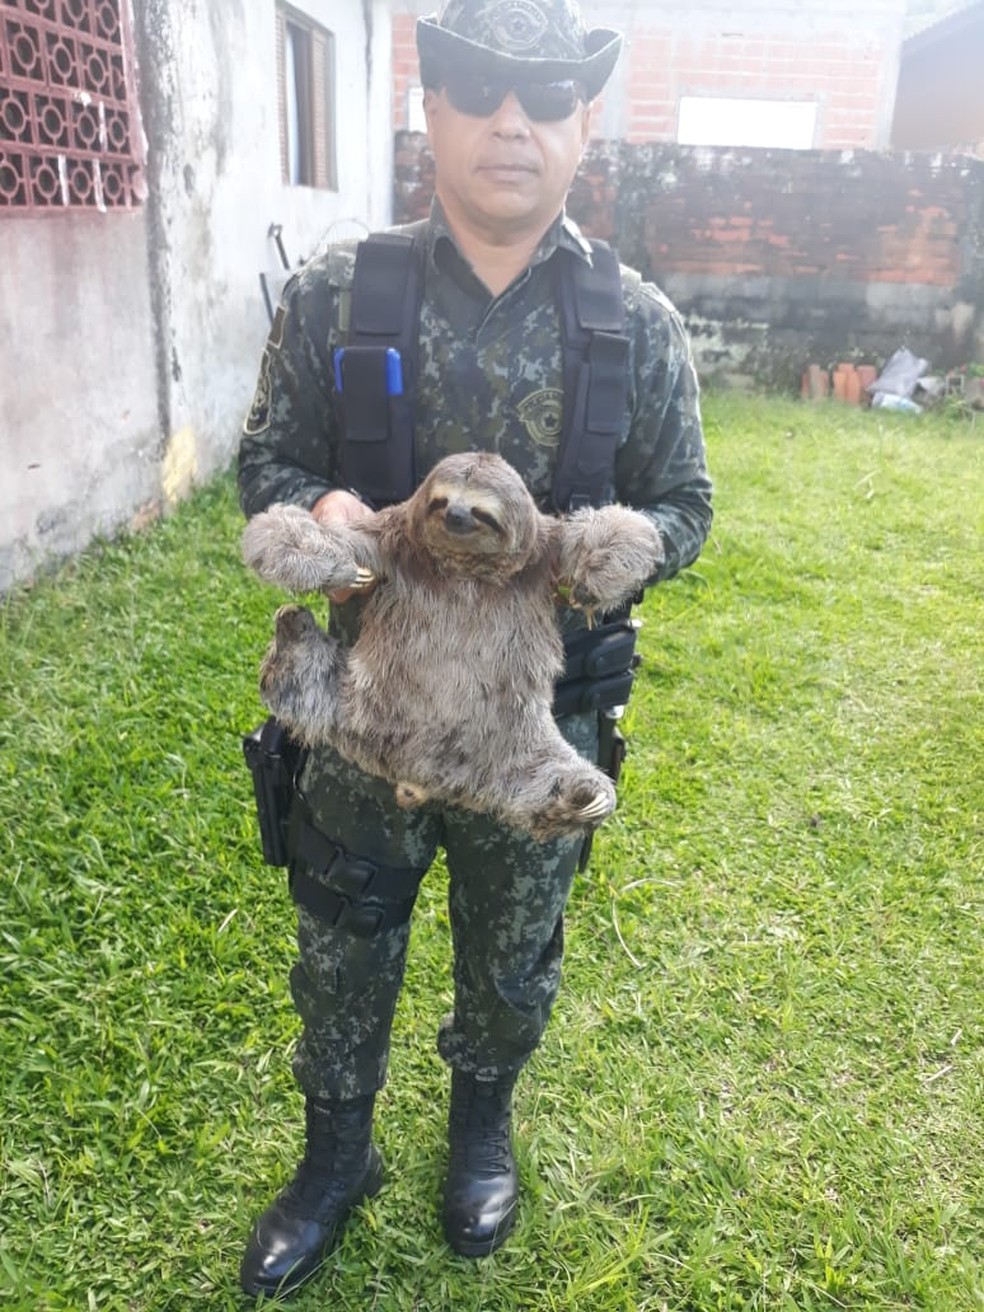 Bicho-preguiça é resgatado de casa em Caraguatatuba — Foto: Divulgação/Polícia Militar Ambiental